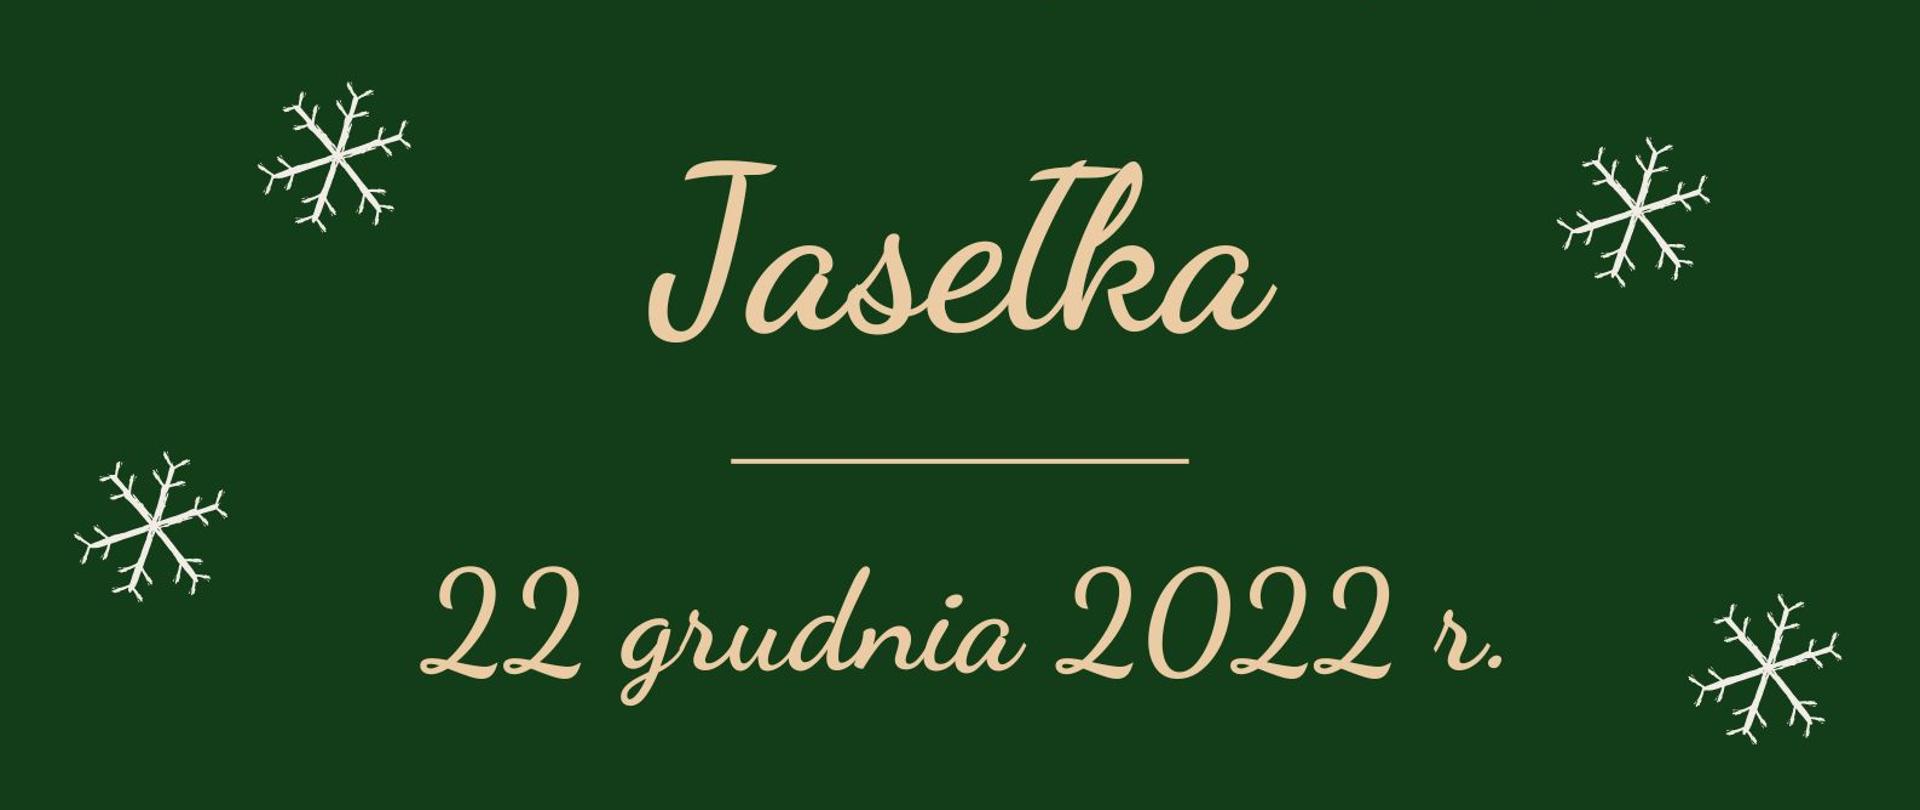 Plakat na zielonym tle z motywami Świąt Bożegonarodzenia informujący o Jasełkach 